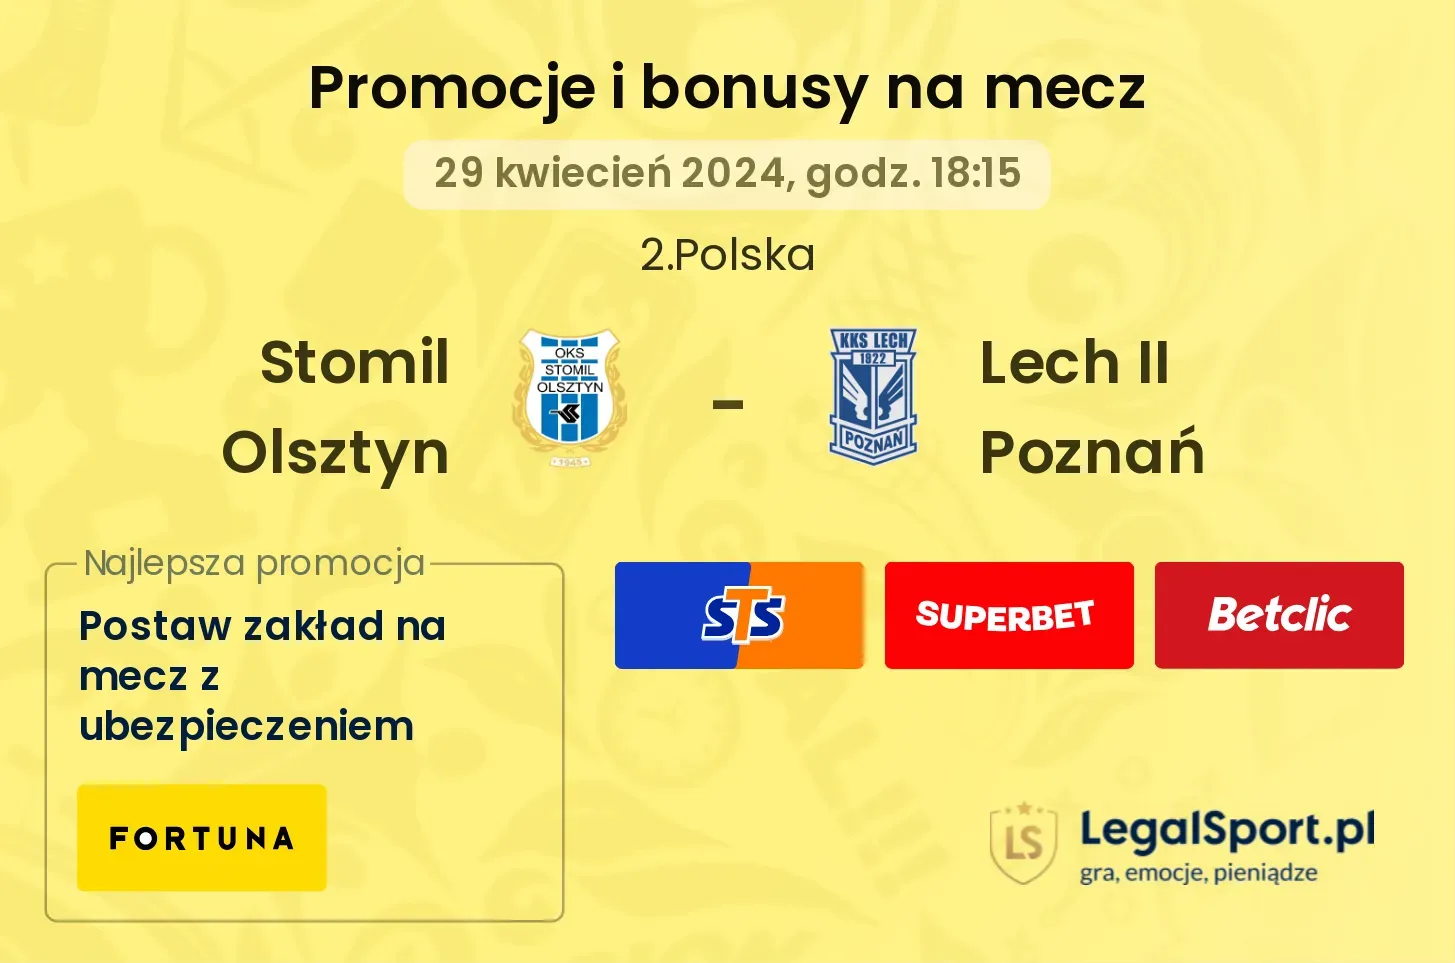 Stomil Olsztyn - Lech II Poznań promocje bonusy na mecz